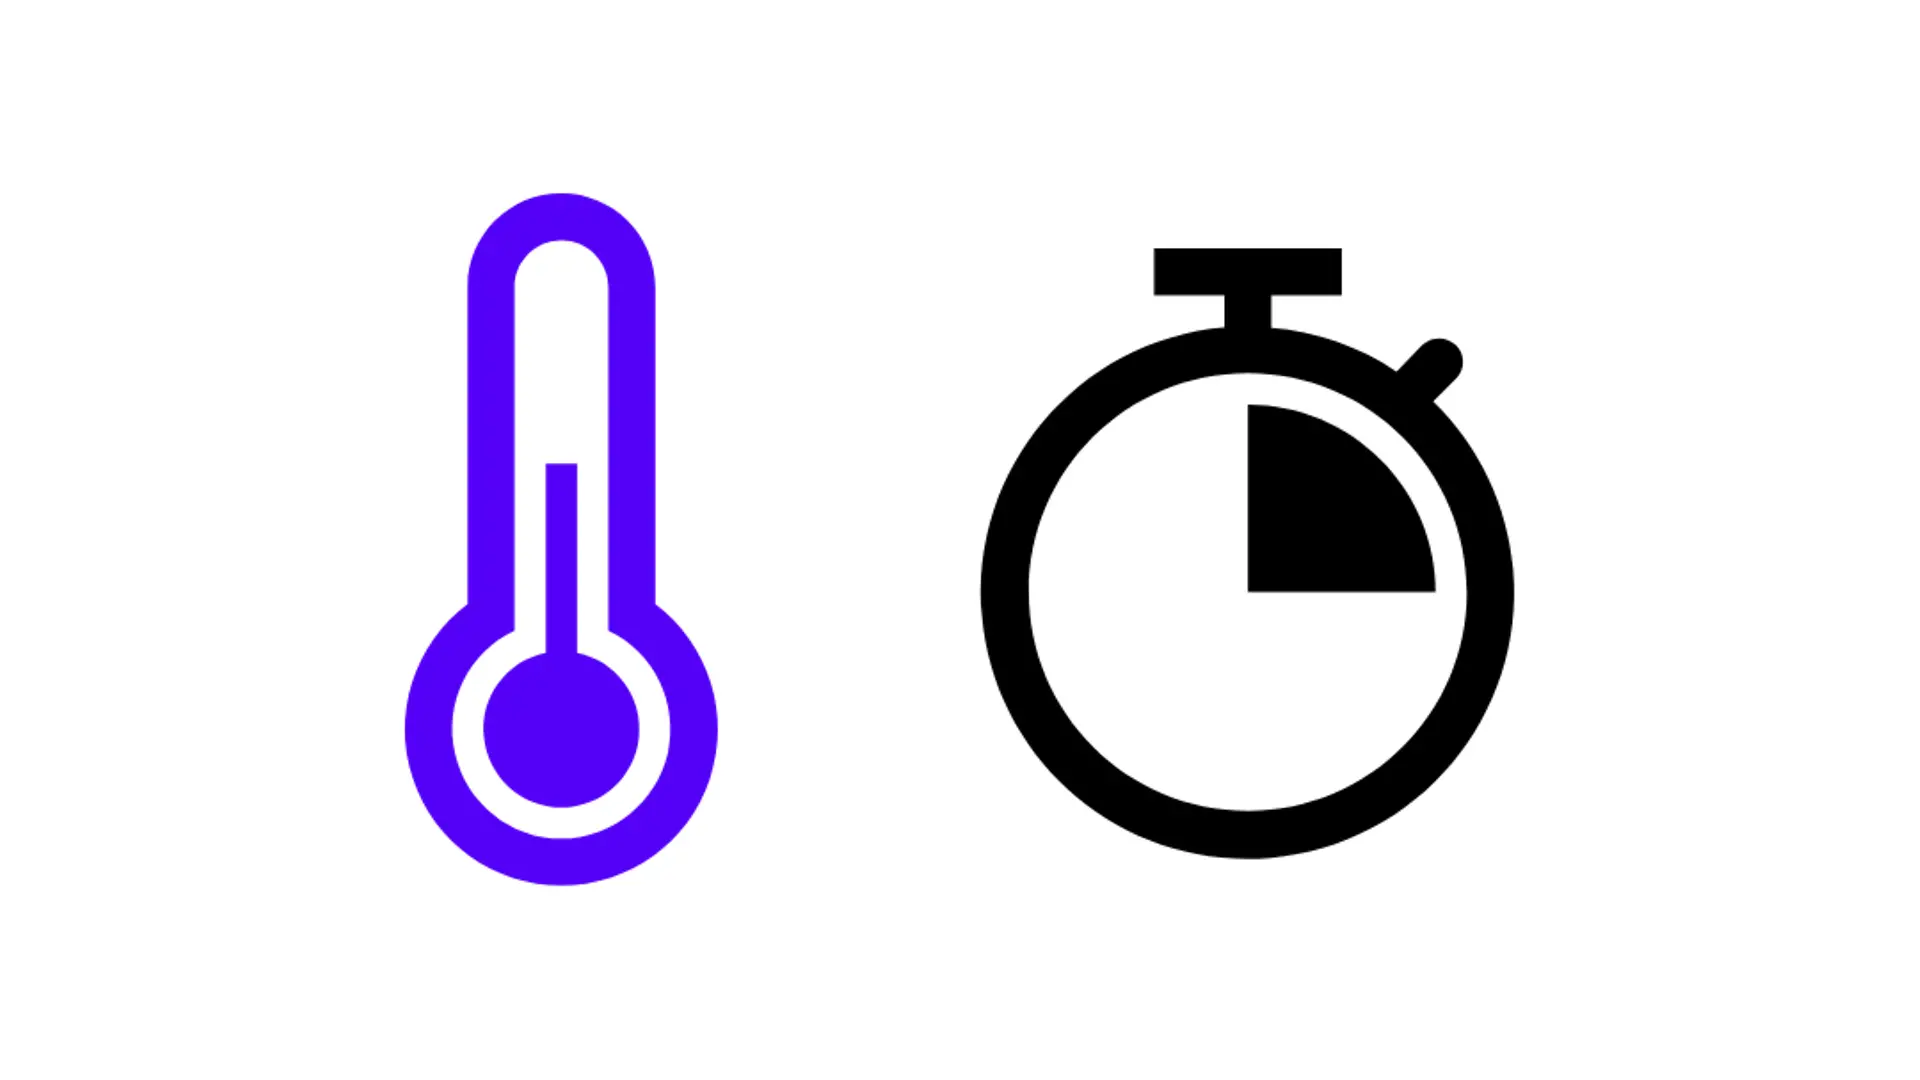 símbolo azul para símbolo de termômetro e relógio, quarto de hora